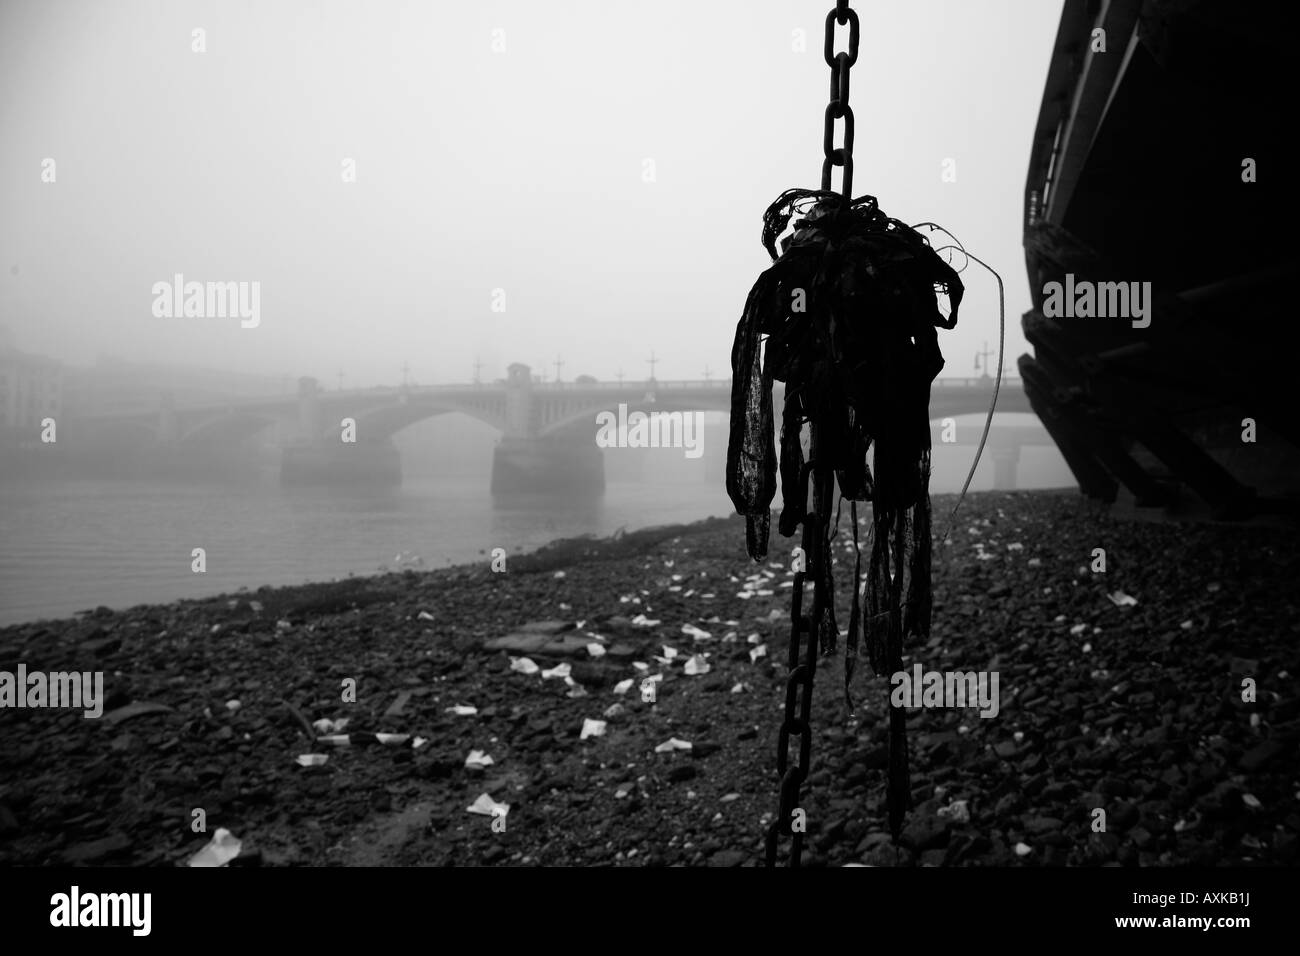 Southwark Bridge shrouded in mist, Bankside, London Stock Photo